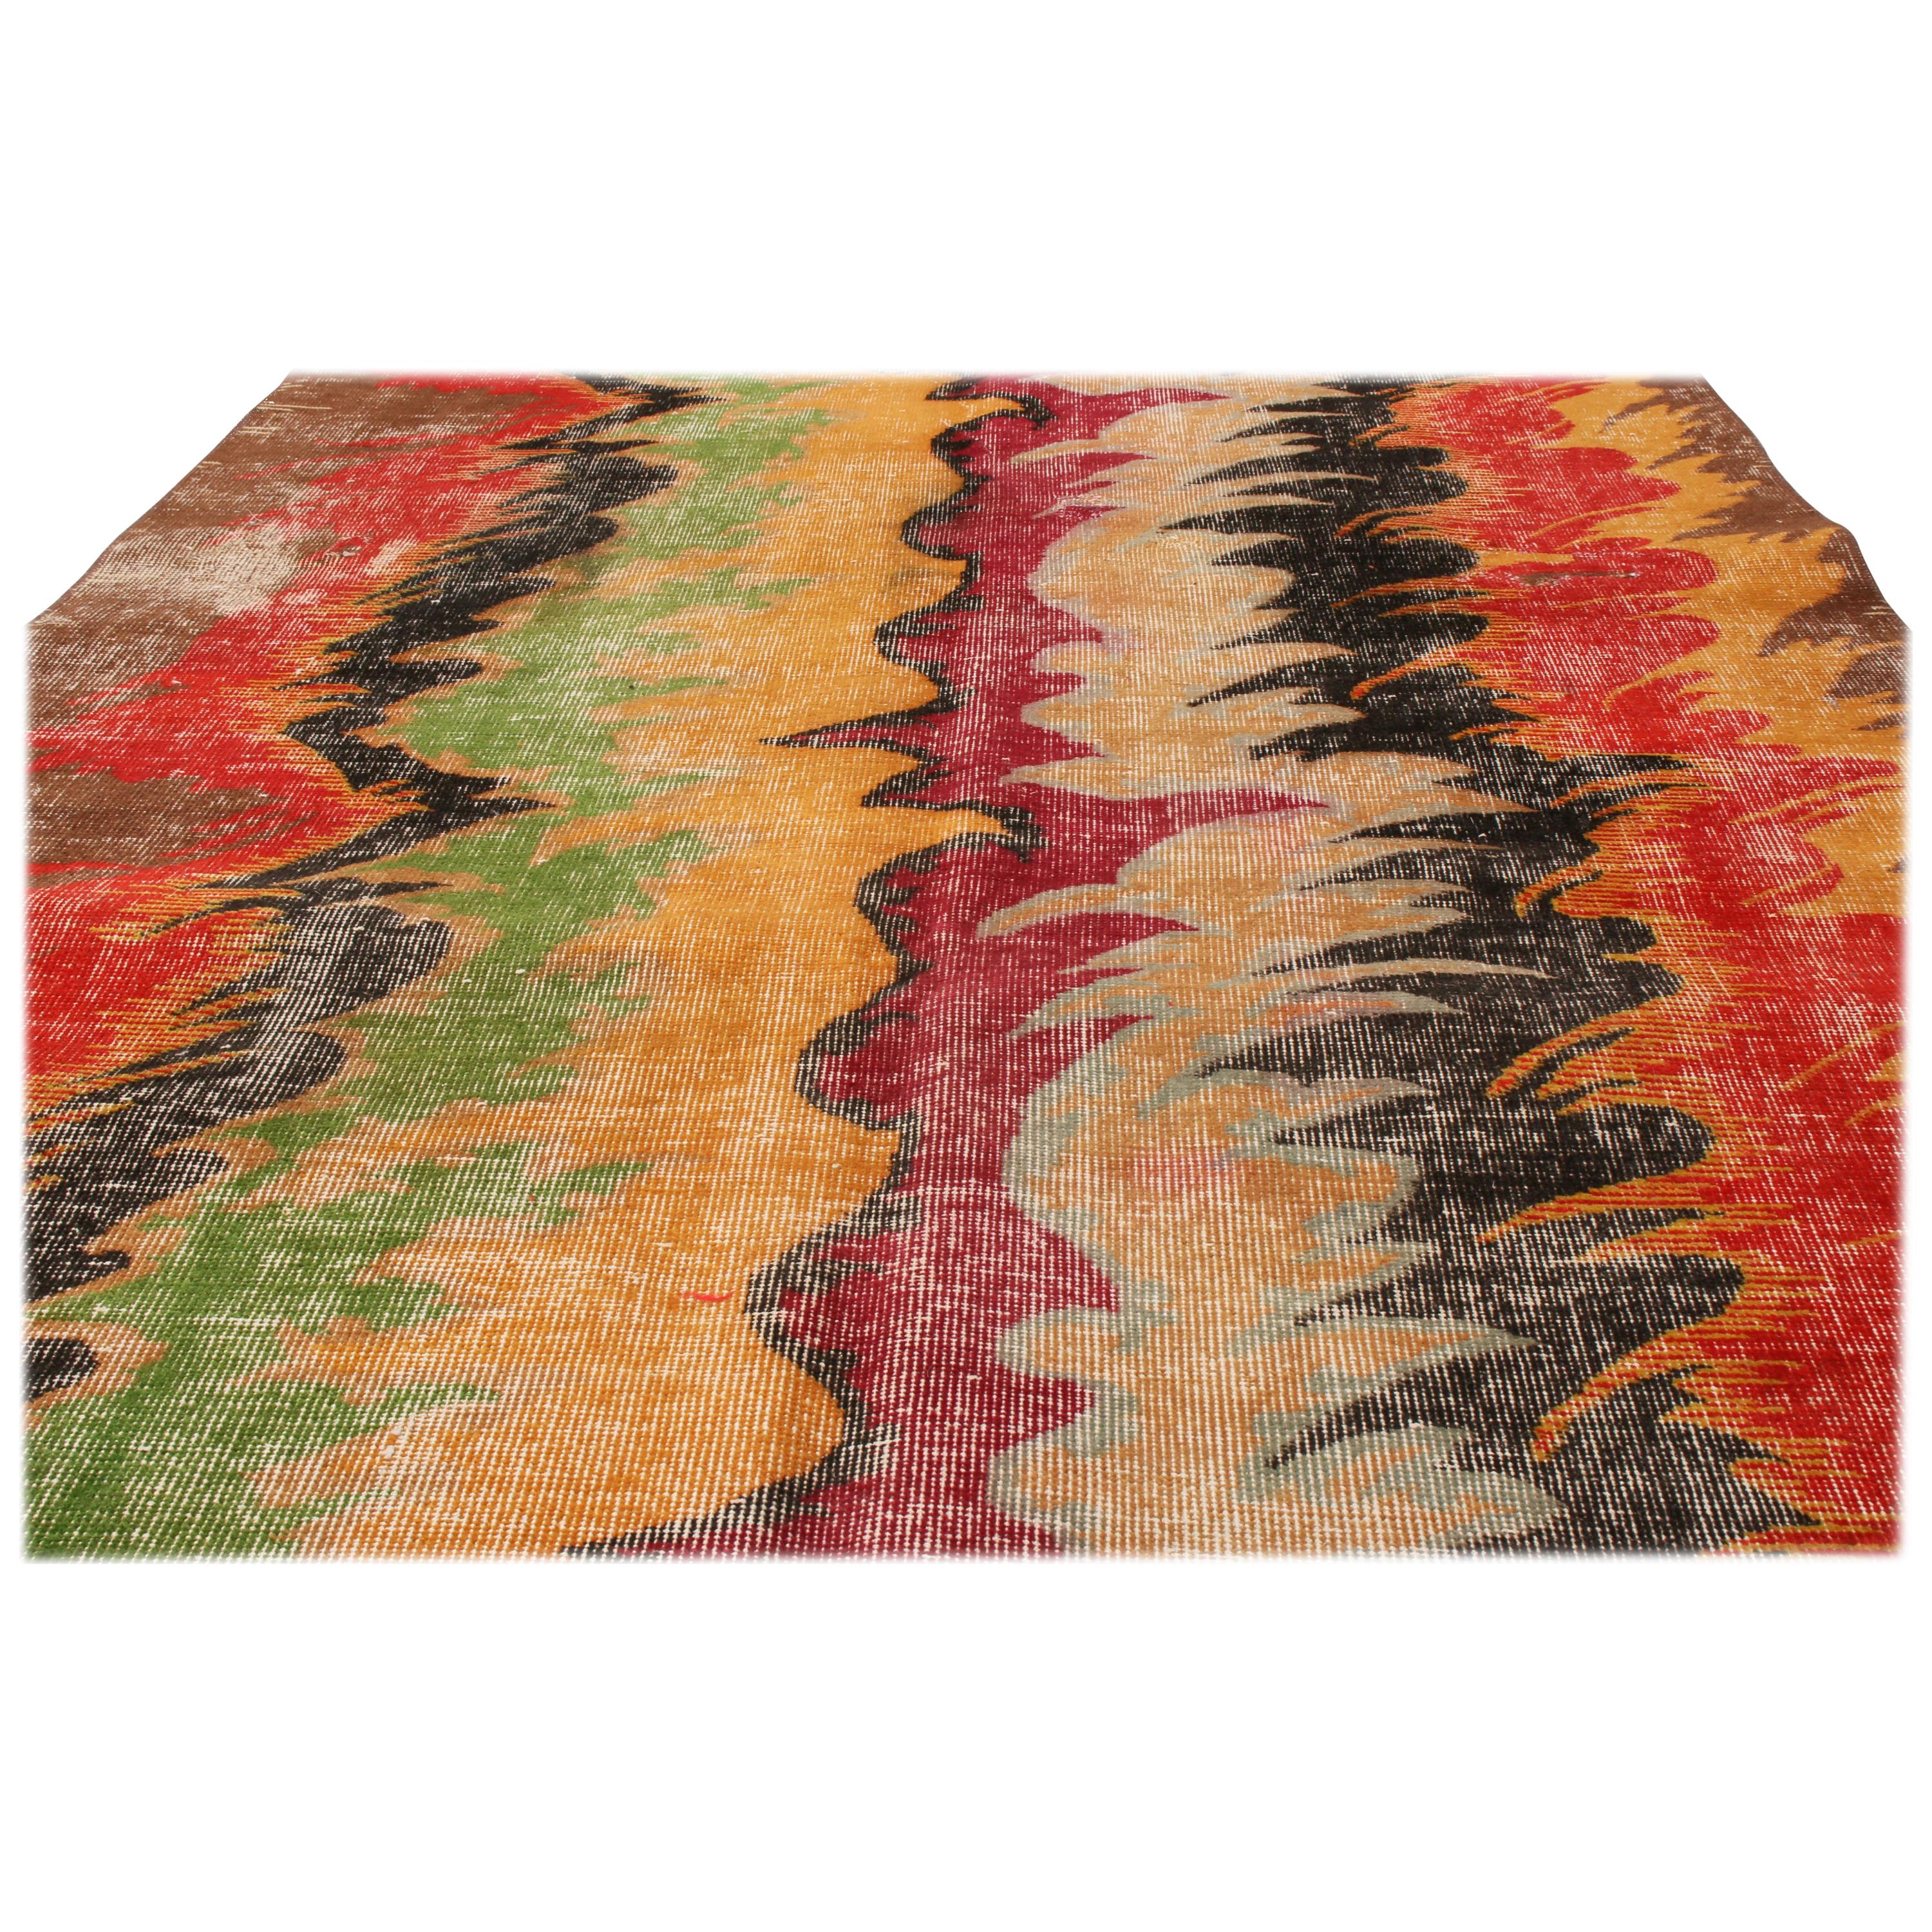 Dieser moderne, geometrische Teppich aus der Türkei ist aus hochwertiger Wolle handgeknüpft und eine Hommage an eine ikonische türkische Familie von Teppichdesigns aus der Mitte des Jahrhunderts. Der Kontrast der leuchtenden und satten Farben von